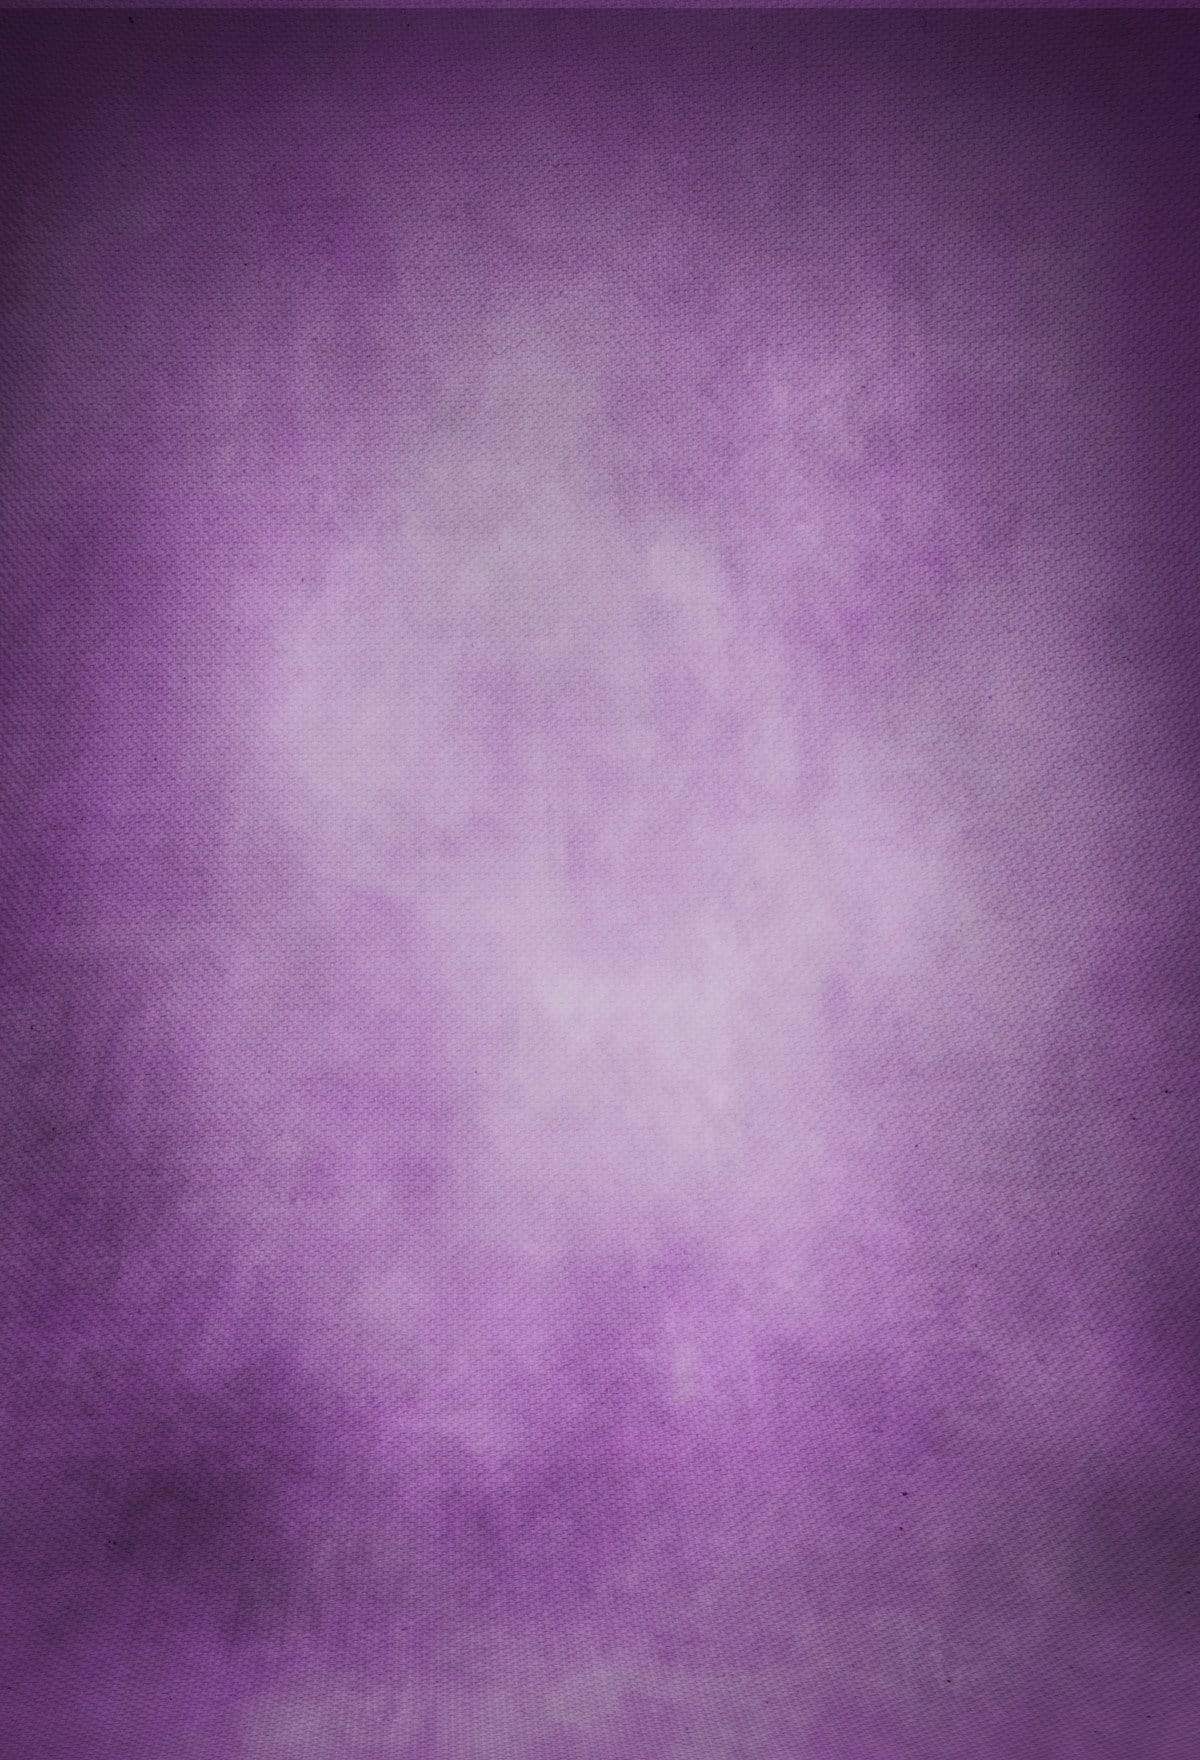 Kate 暗い紫色の抽象的なテクスチ背景布 のデザインですJFCC